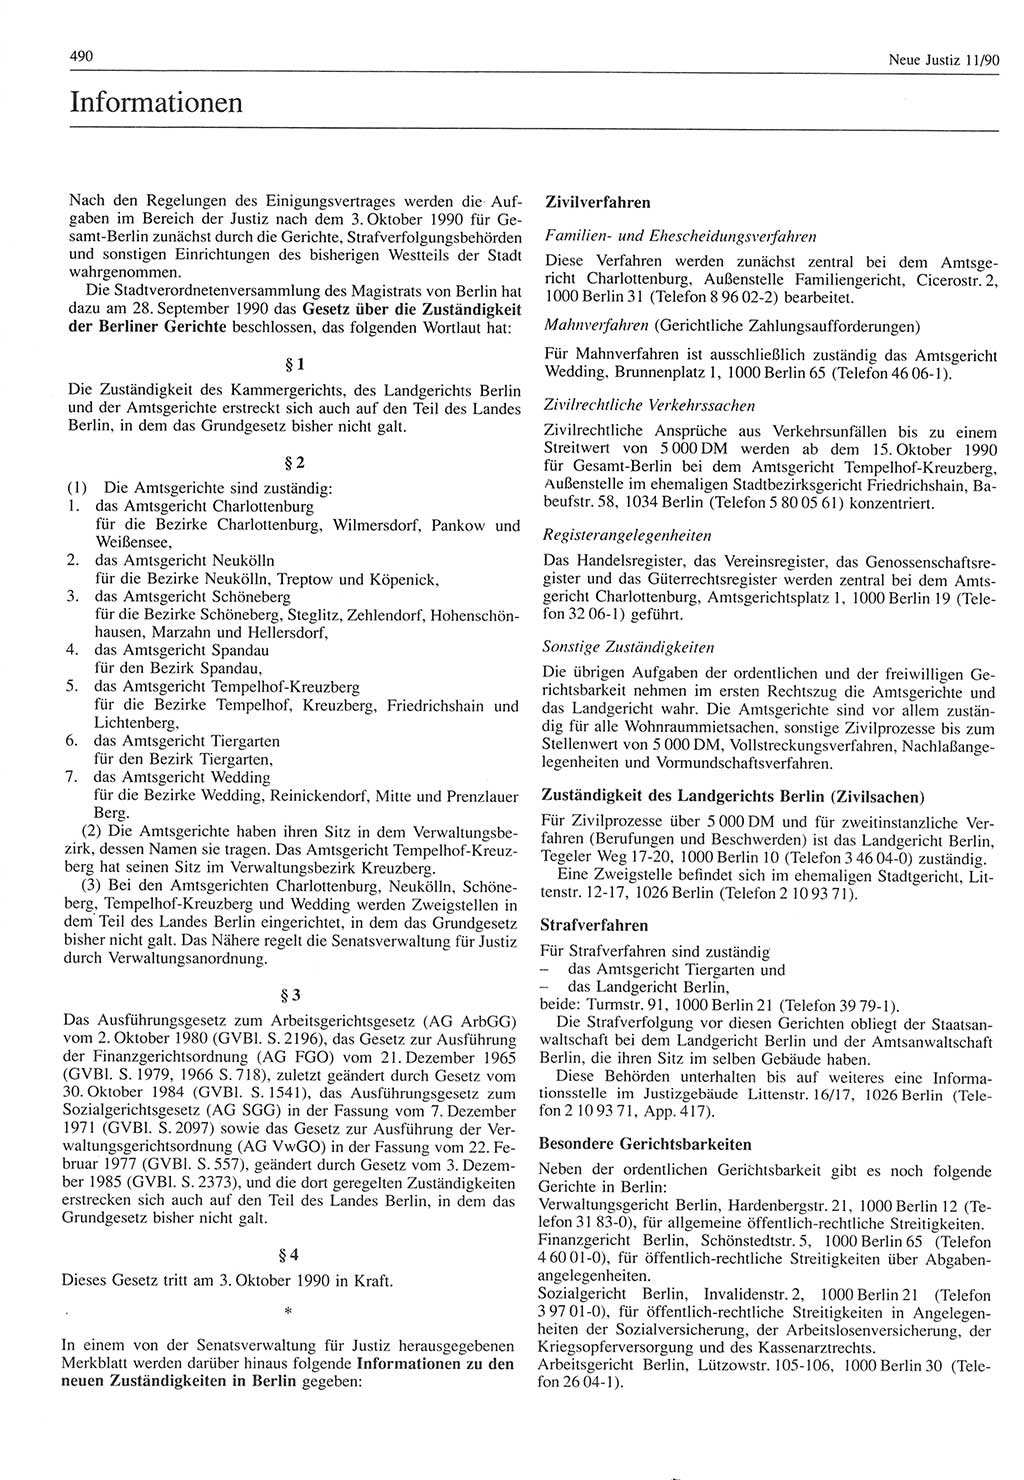 Neue Justiz (NJ), Zeitschrift für Rechtsetzung und Rechtsanwendung [Deutsche Demokratische Republik (DDR)], 44. Jahrgang 1990, Seite 490 (NJ DDR 1990, S. 490)